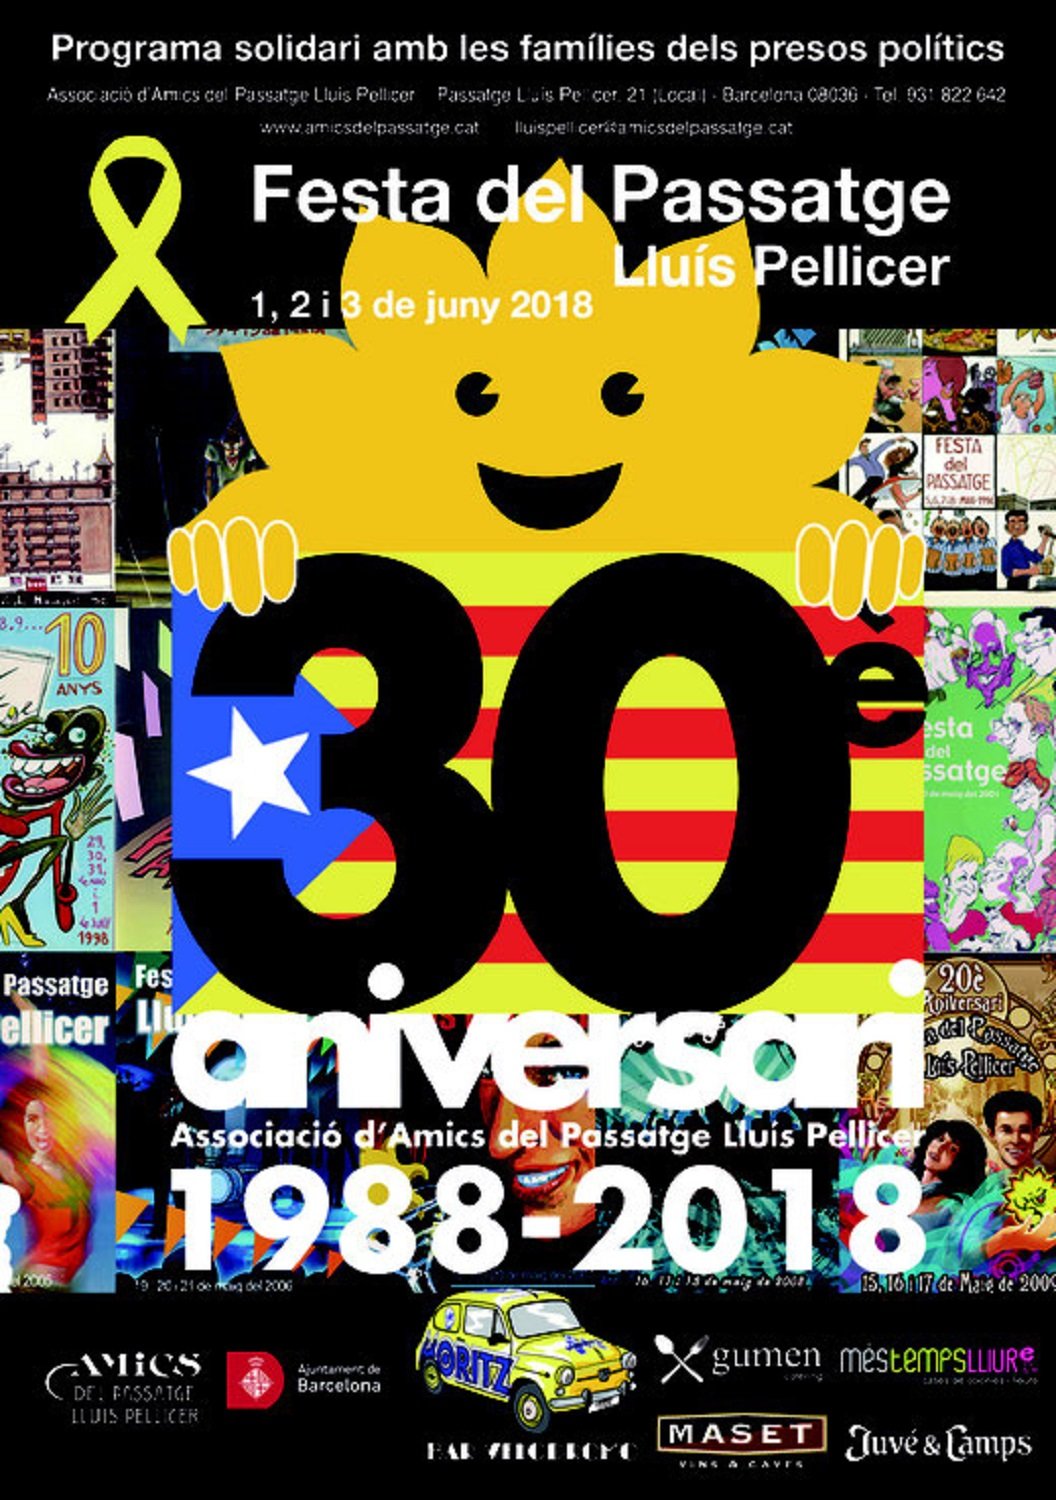 La Associació d'Amics del Passatge Lluís Pellicer celebra su 30ª fiesta mayor